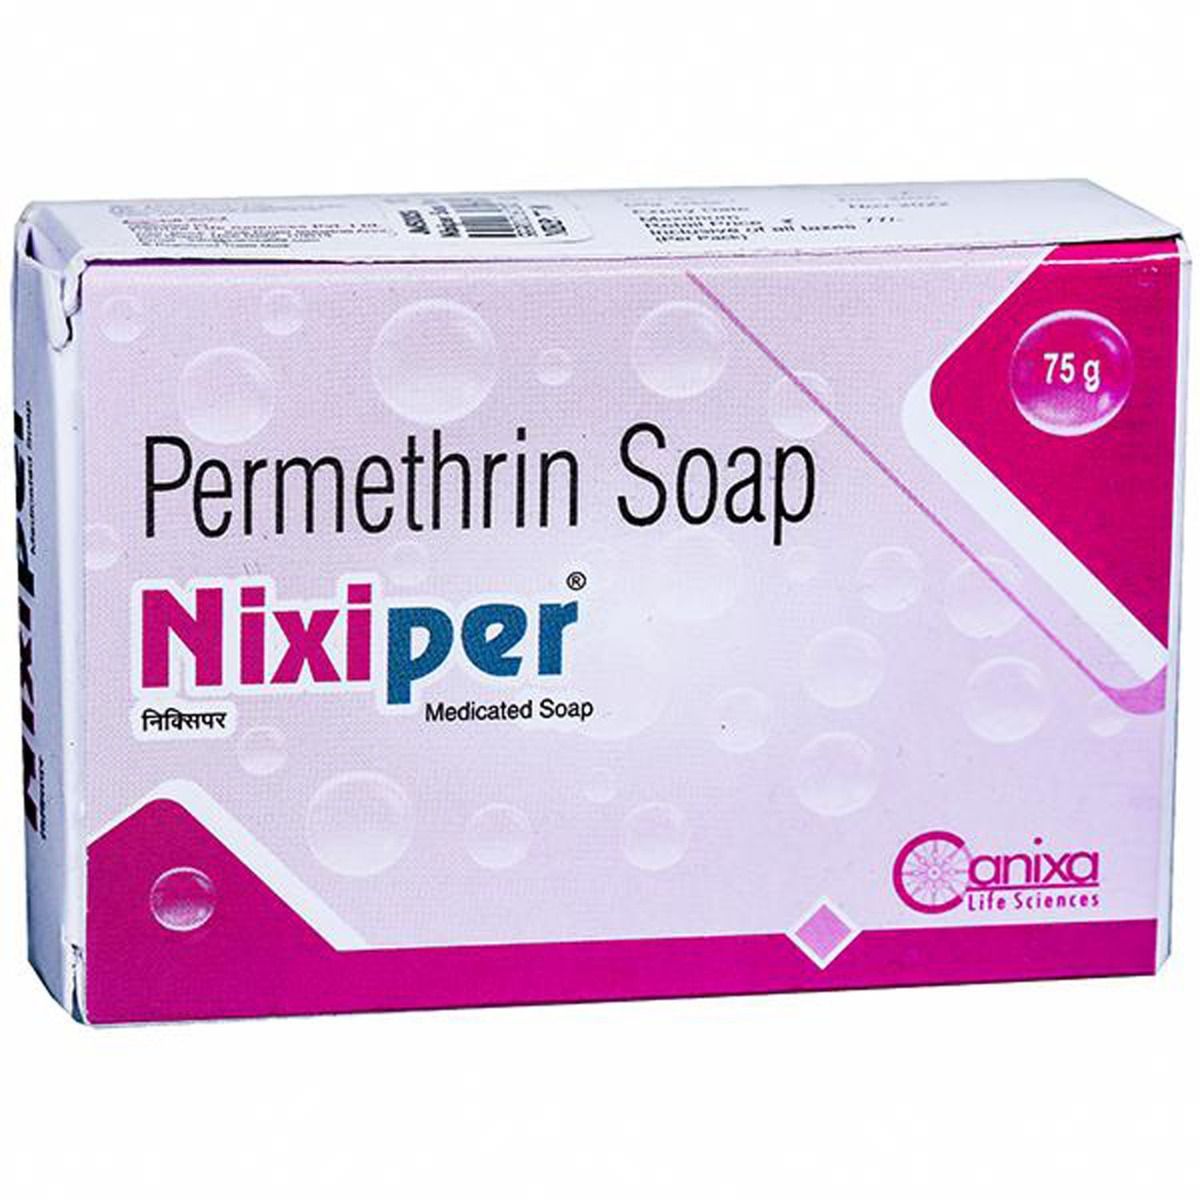 Buy Nixiper Soap, 75 gm Online